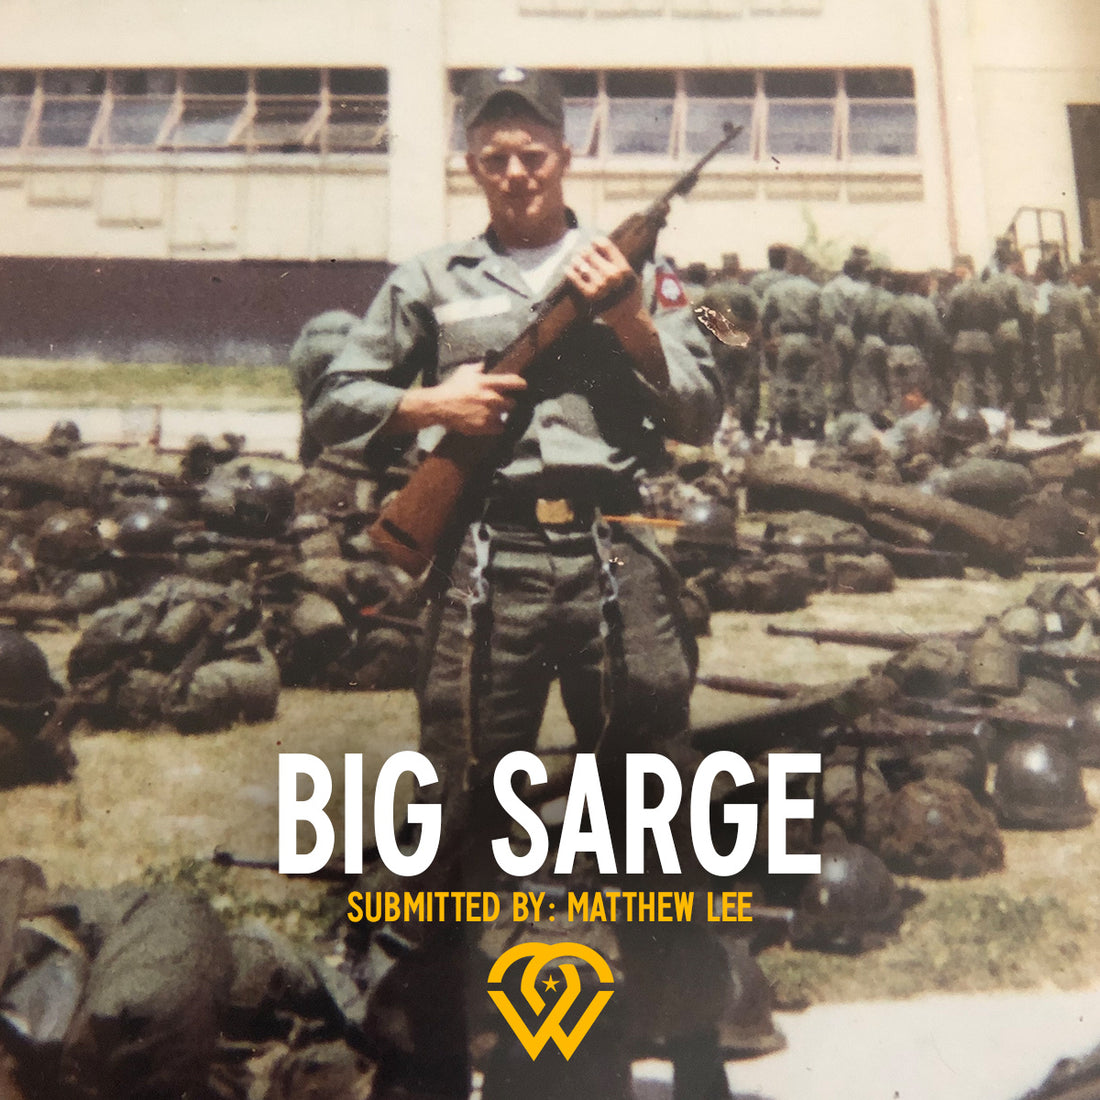 Big Sarge